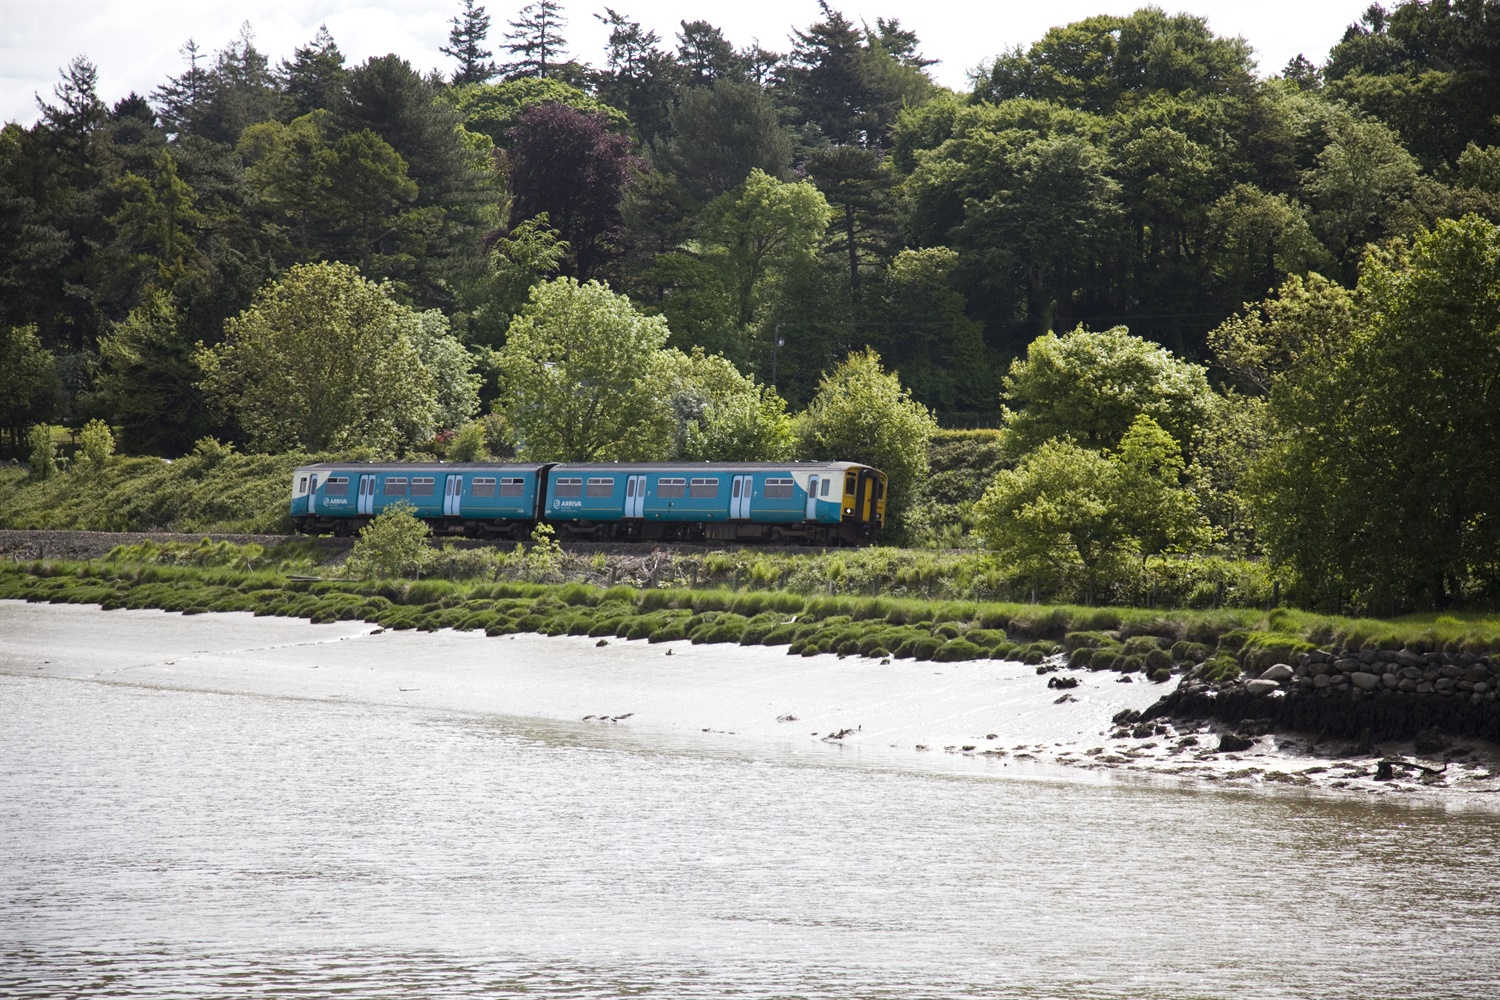 Welsh trains £200k makeover set to start